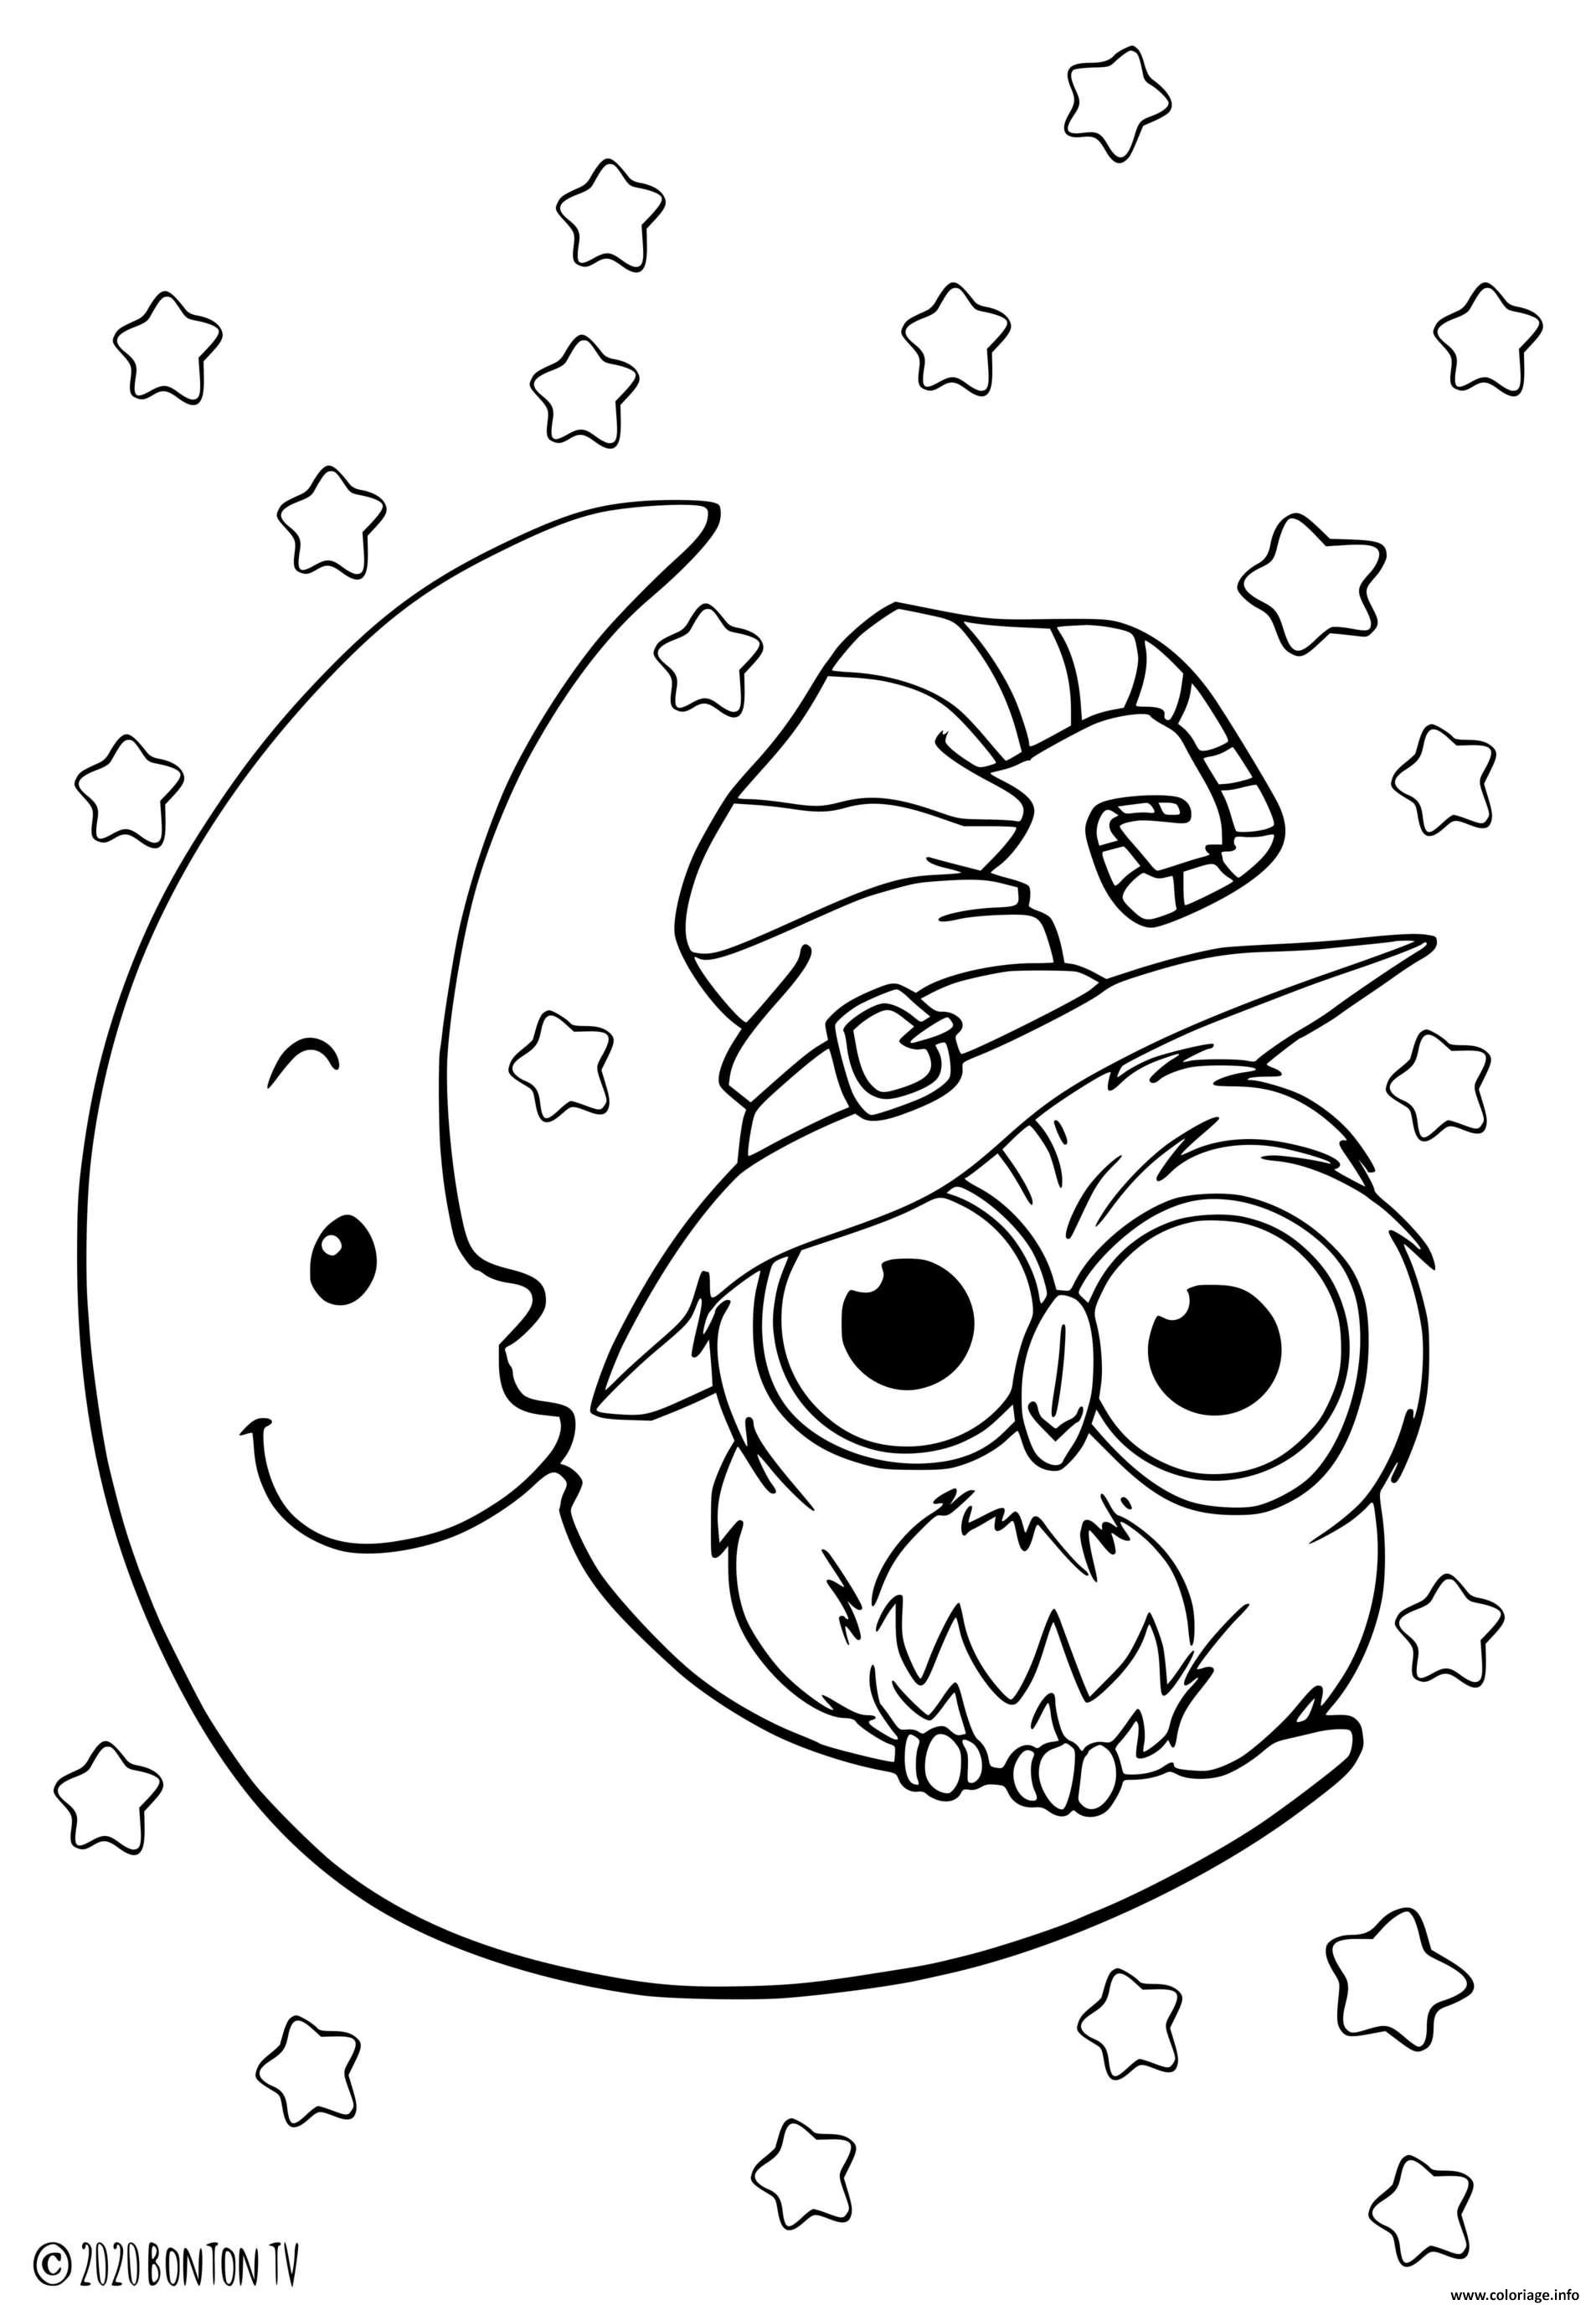 Dessin hibou sur la lune pour le jour de halloween Coloriage Gratuit à Imprimer